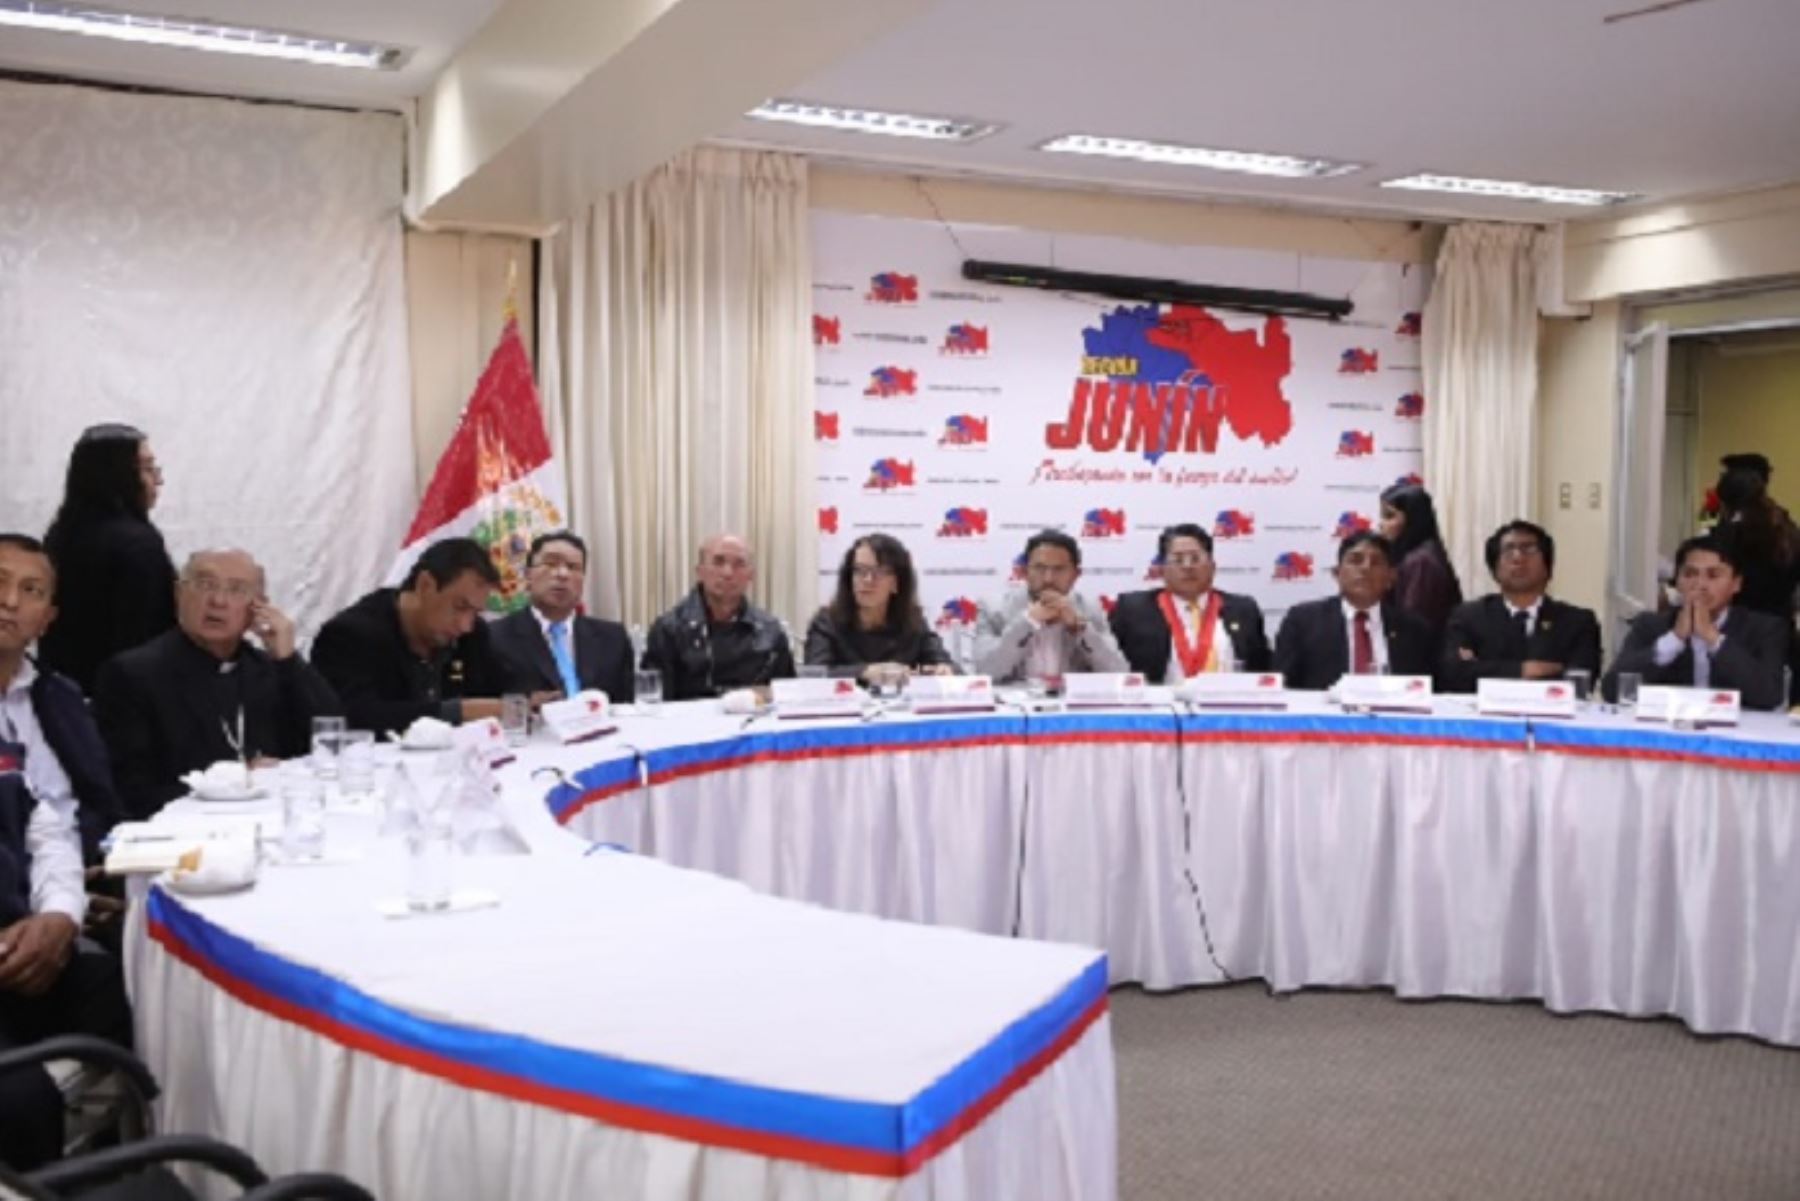 Titular de Justicia y autoridades de Junín definen acciones preventivas por emergencias